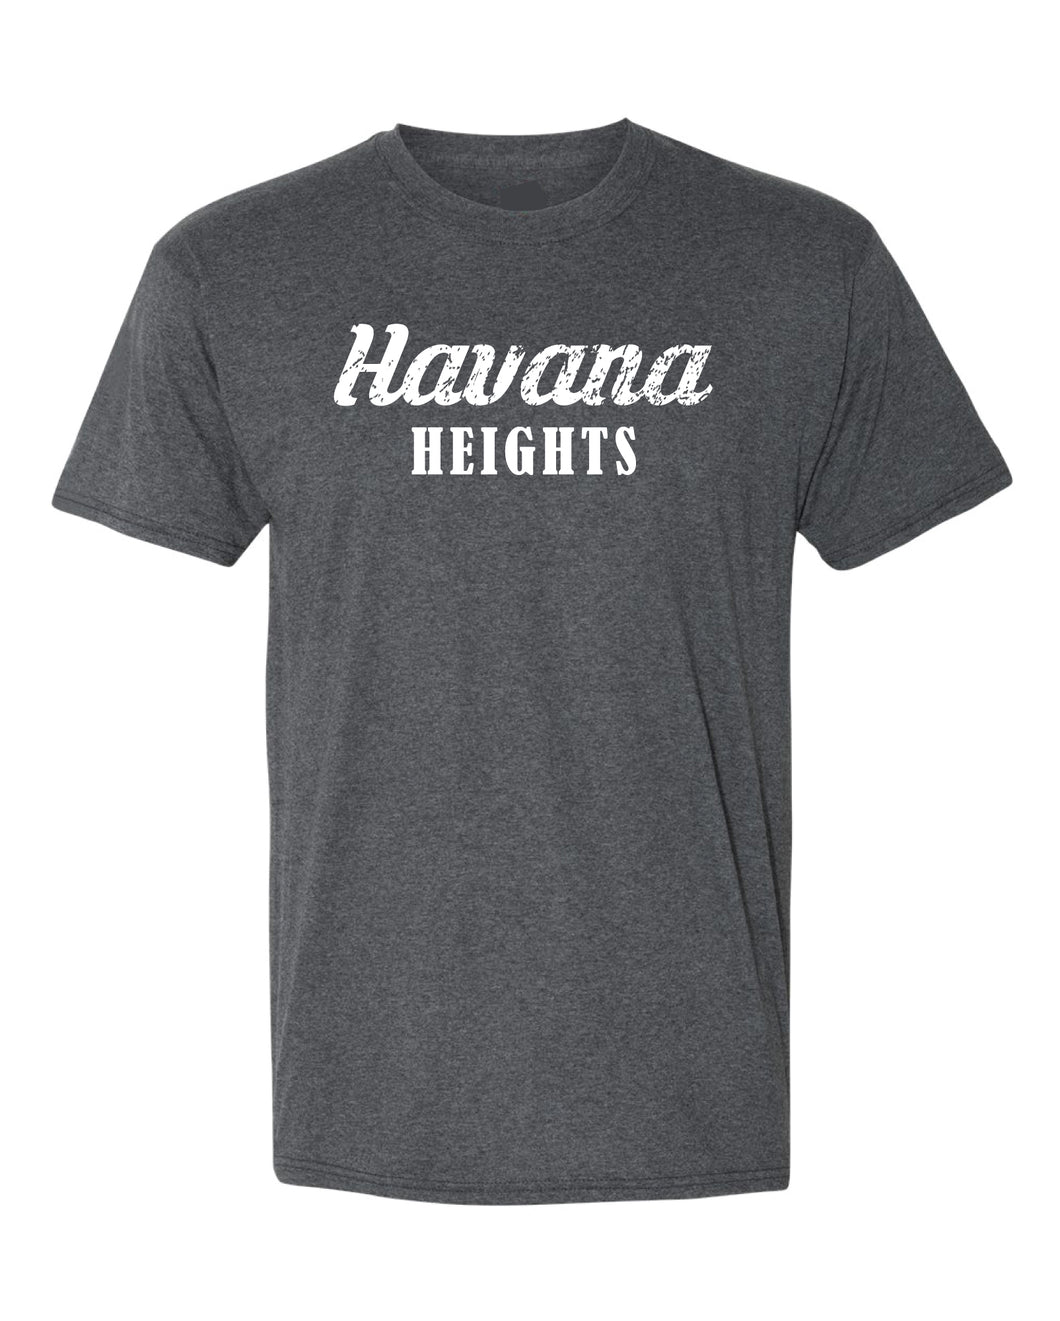 Havana Heights Cotton Crew Tee - Grey - 5KounT2018